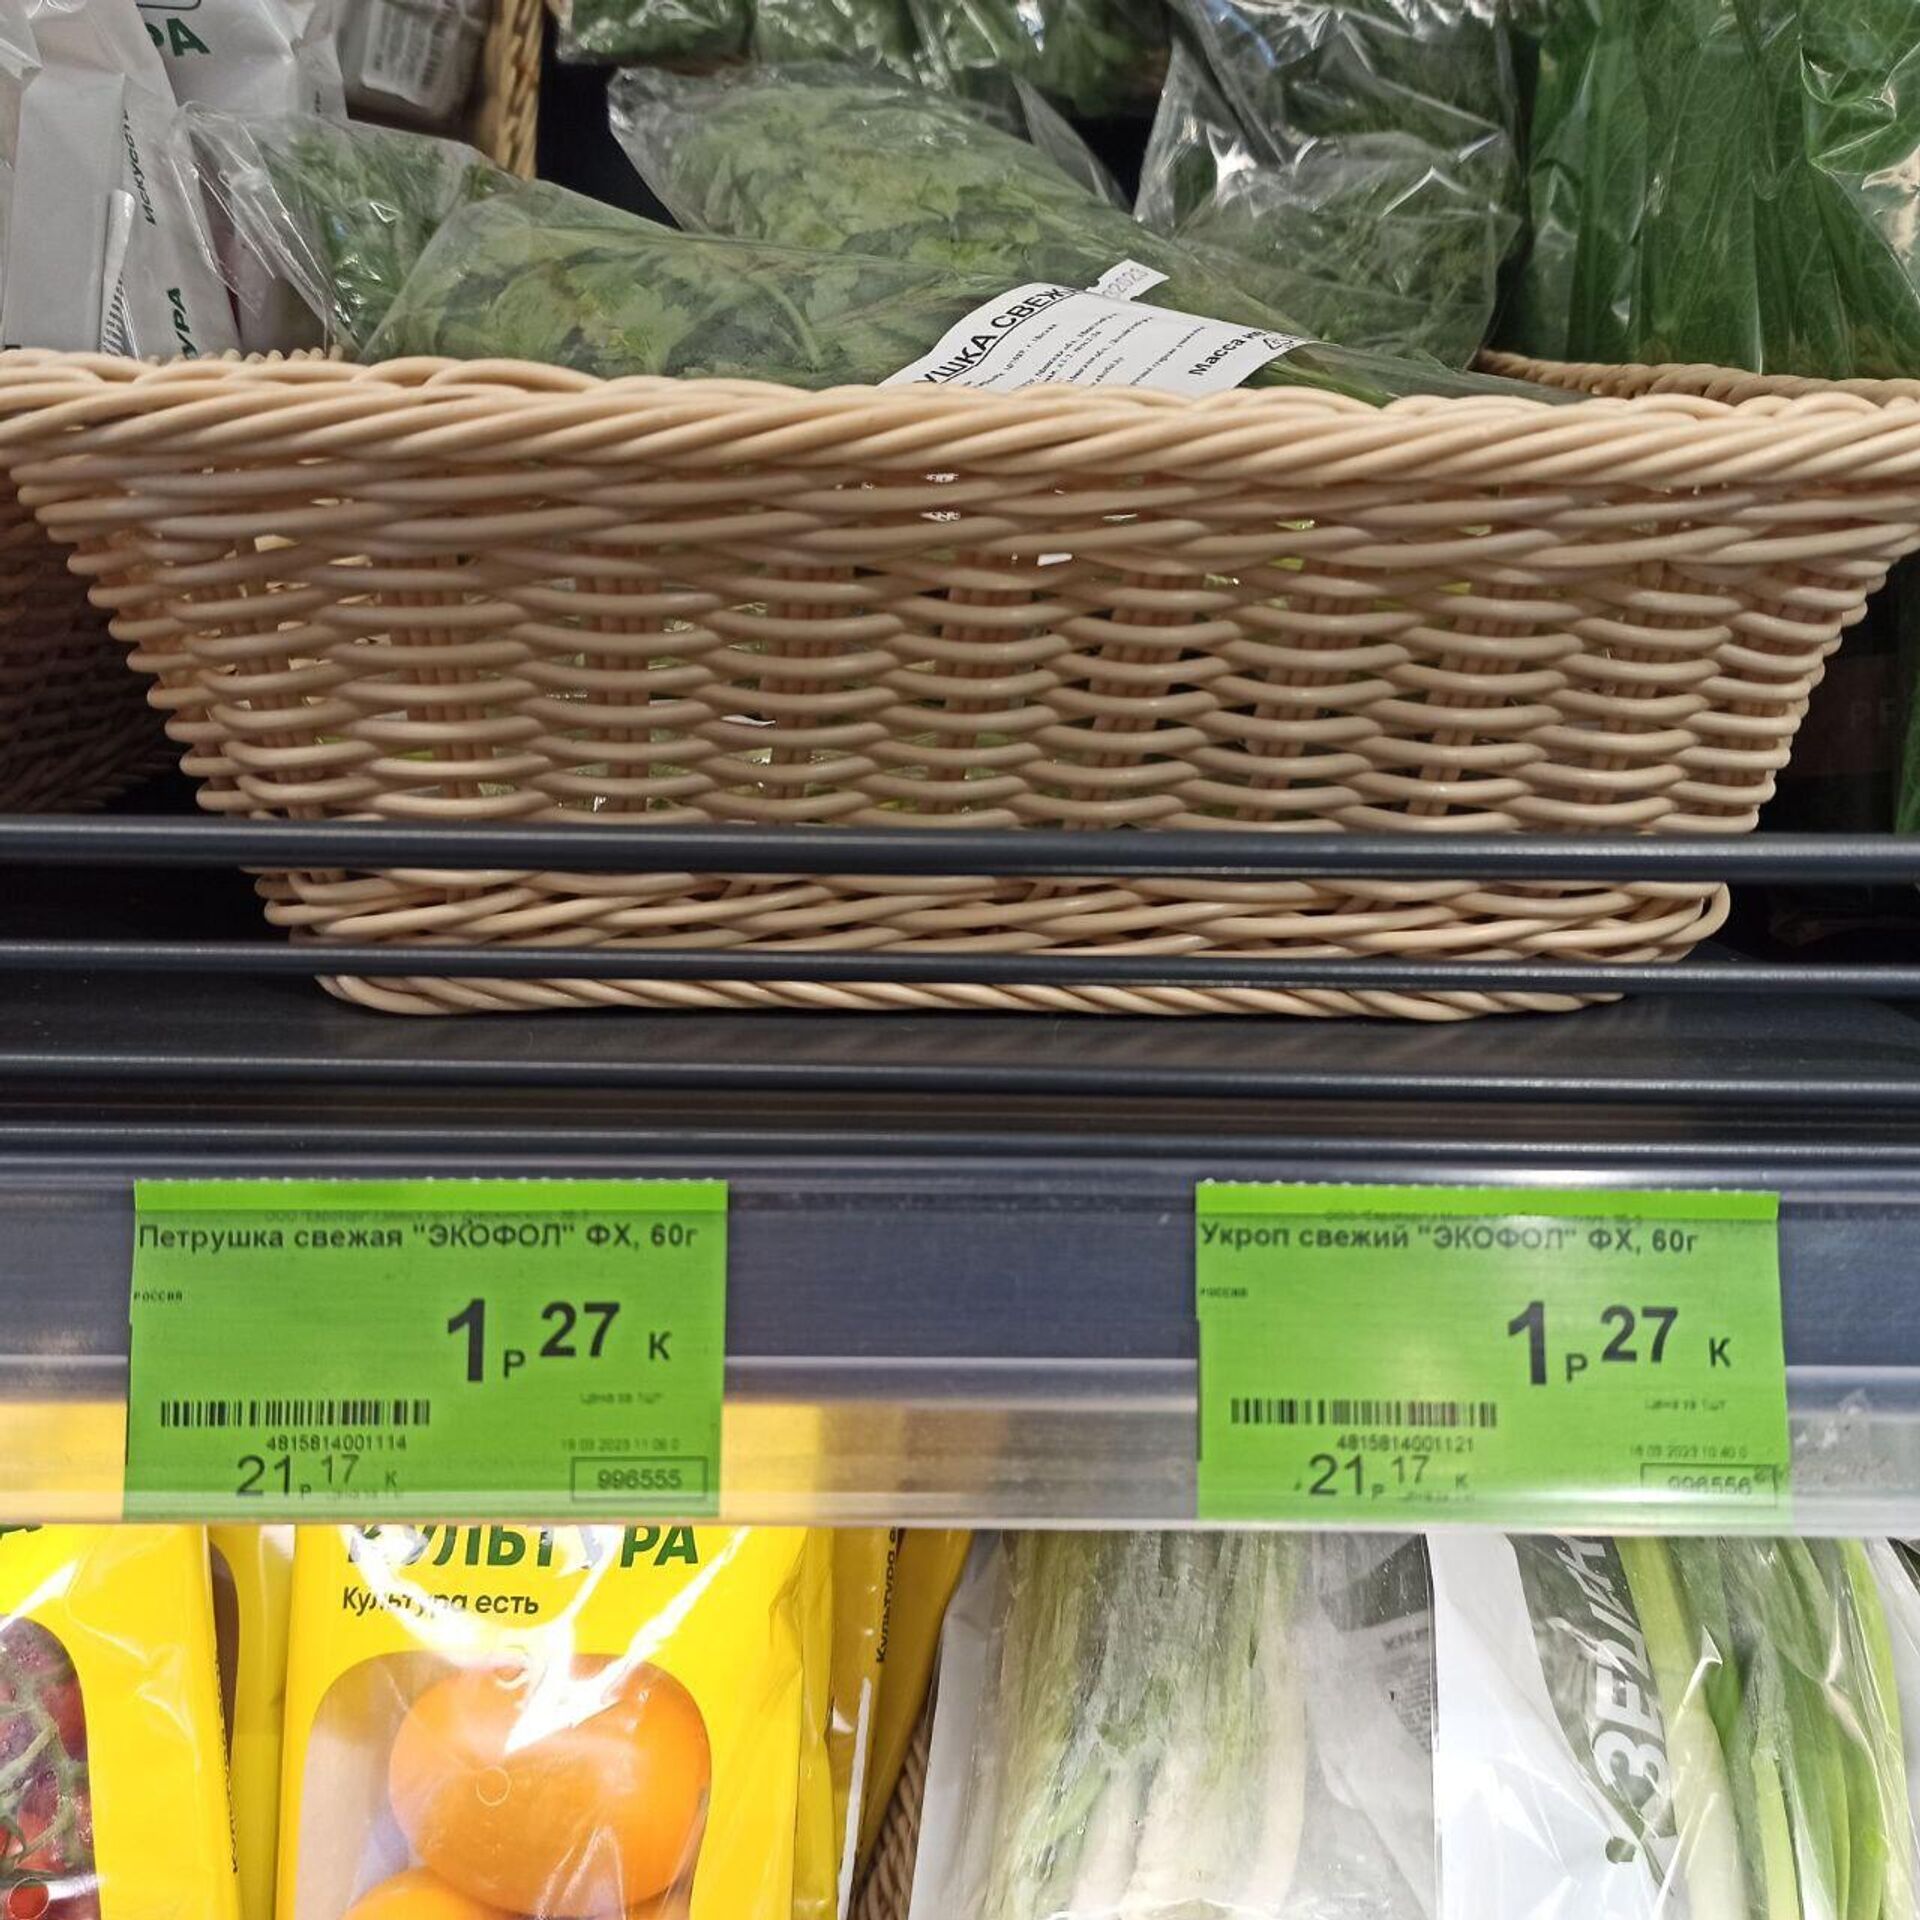 Цены на овощи и фрукты в магазинах – март 2023 - Sputnik Беларусь, 1920, 20.03.2023